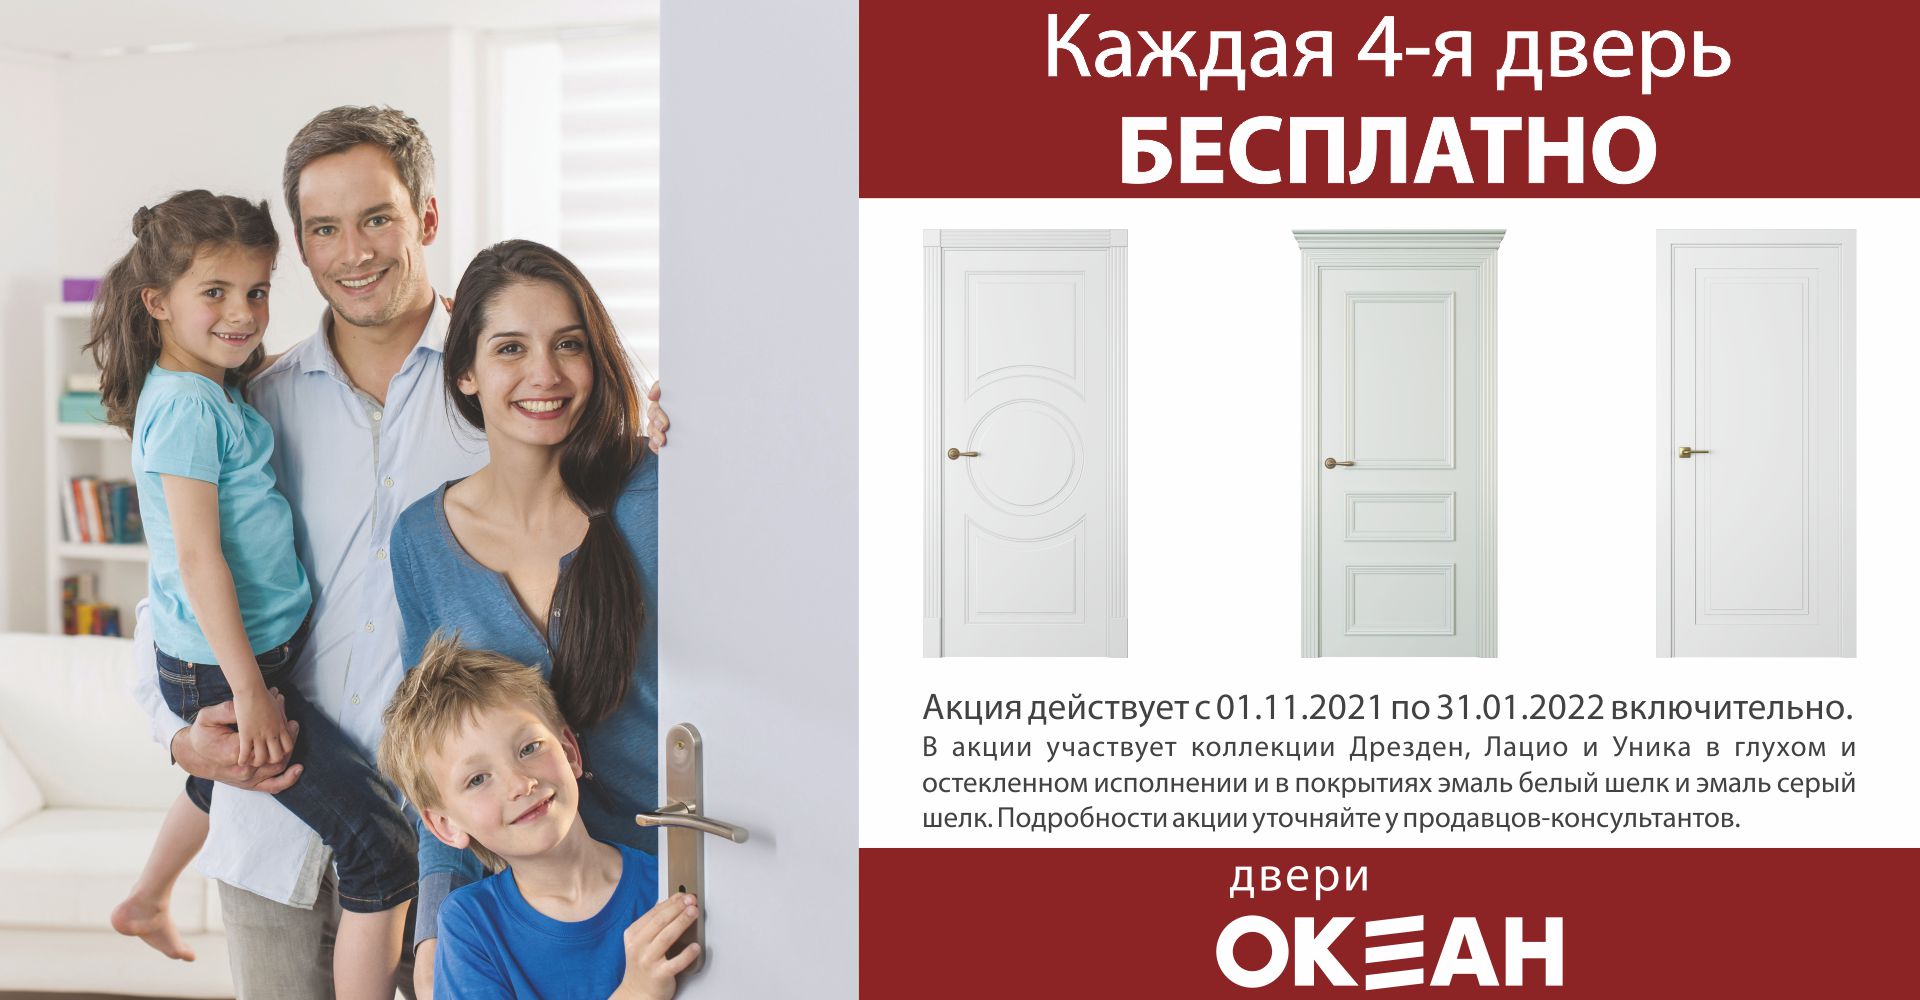 Скидки и акции на ульяновские белые двери ОКЕАН 4-я дверь в подарок фото 2021 год